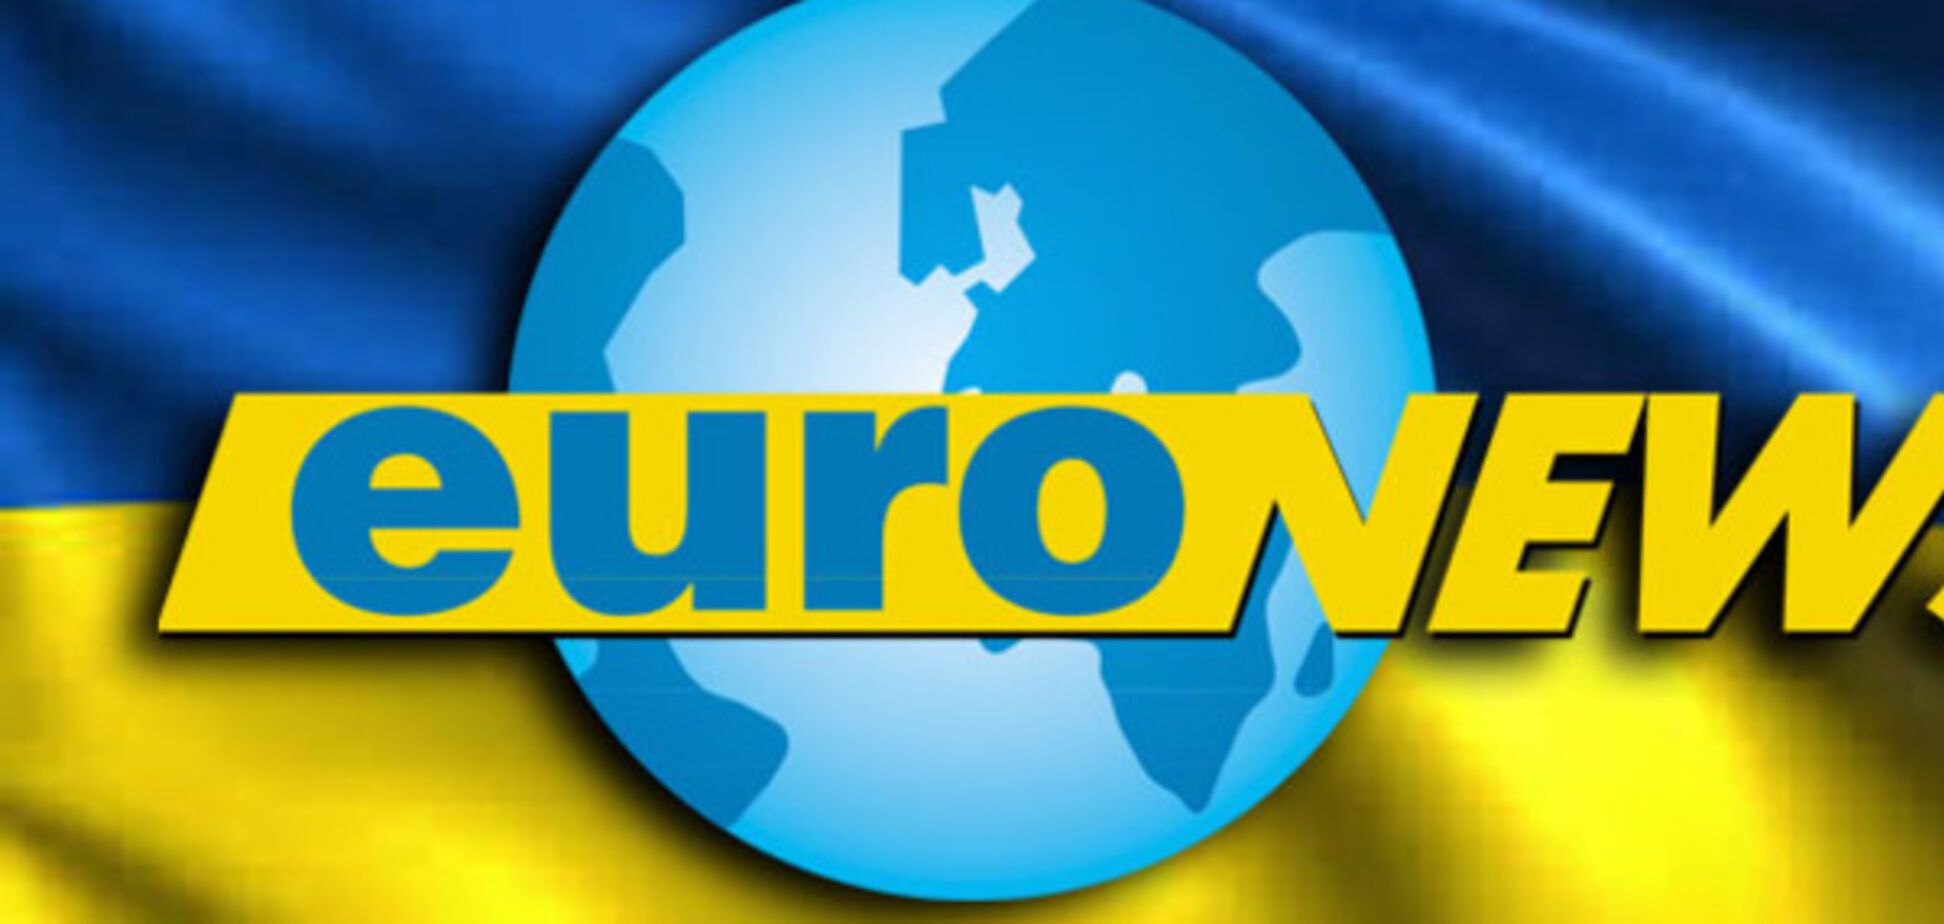 Український Euronews: що відомо про цей проект